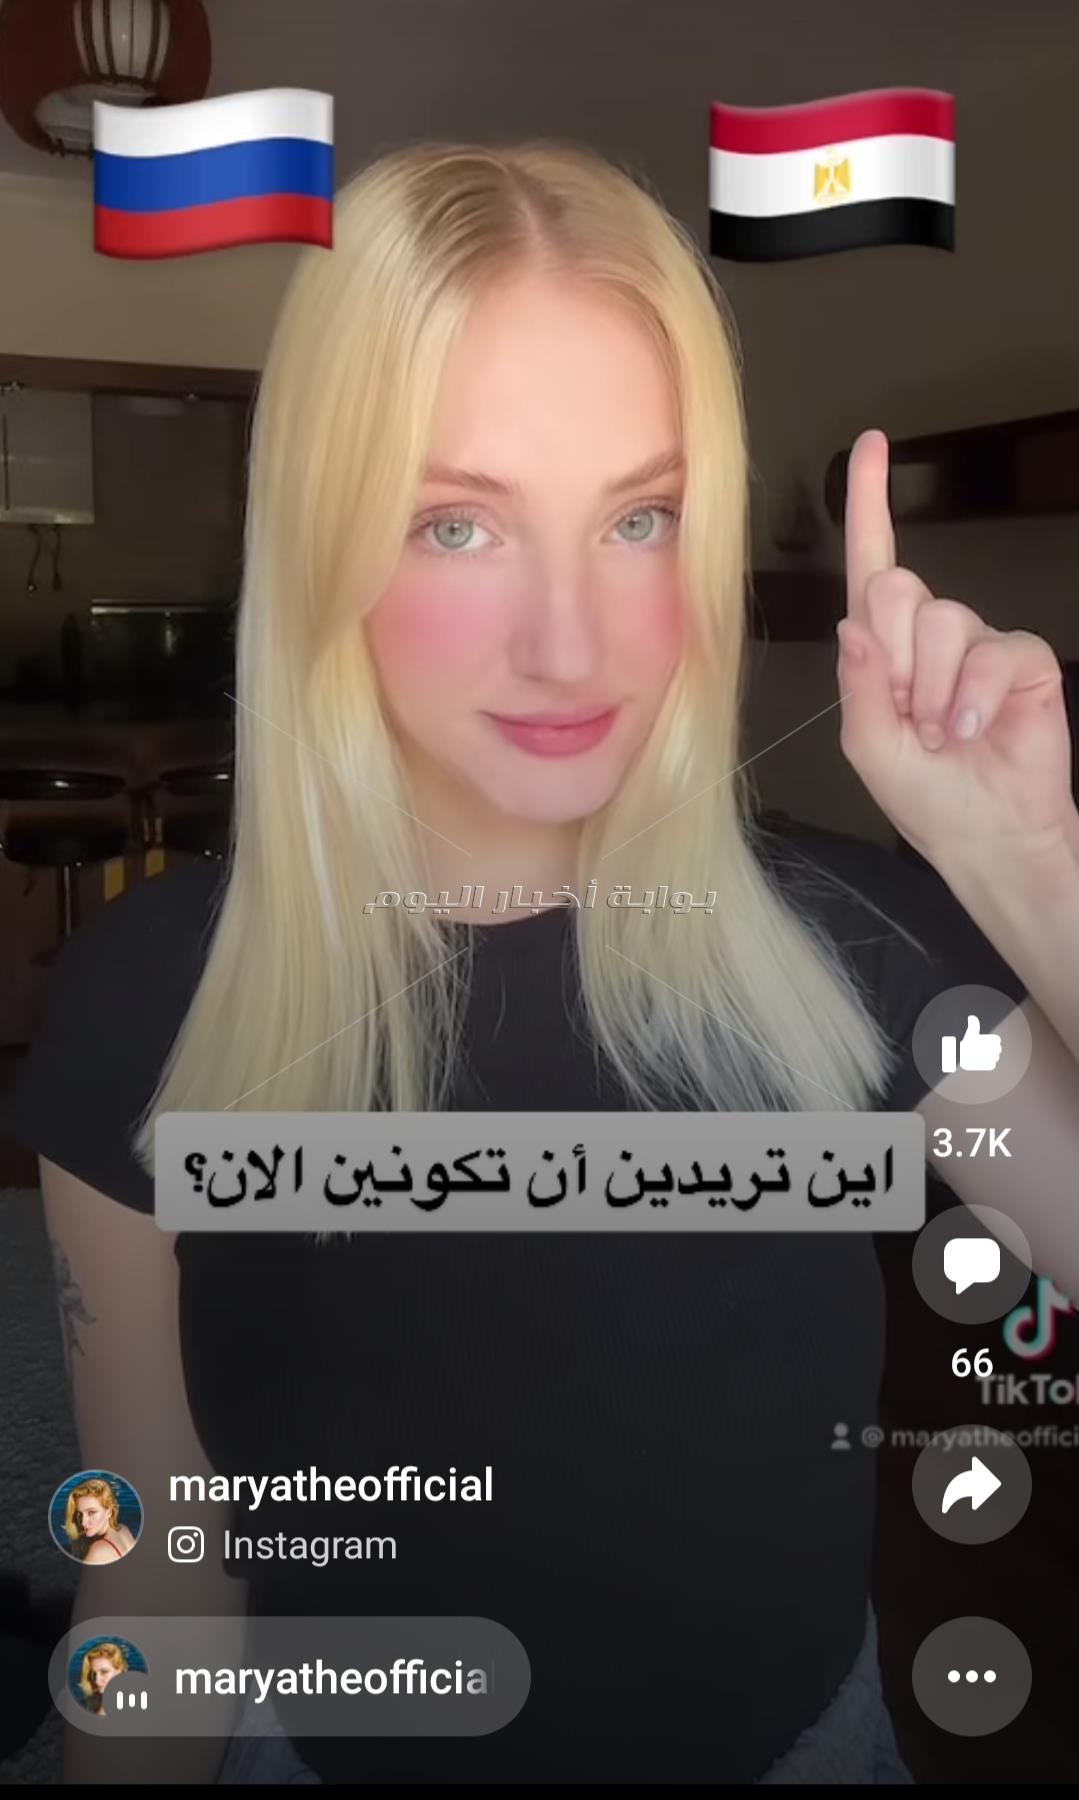  فتاة روسية تروج لام الدنيا  عبر مواقع التواصل الاجتماعي: مصر لديها افضل طعام 